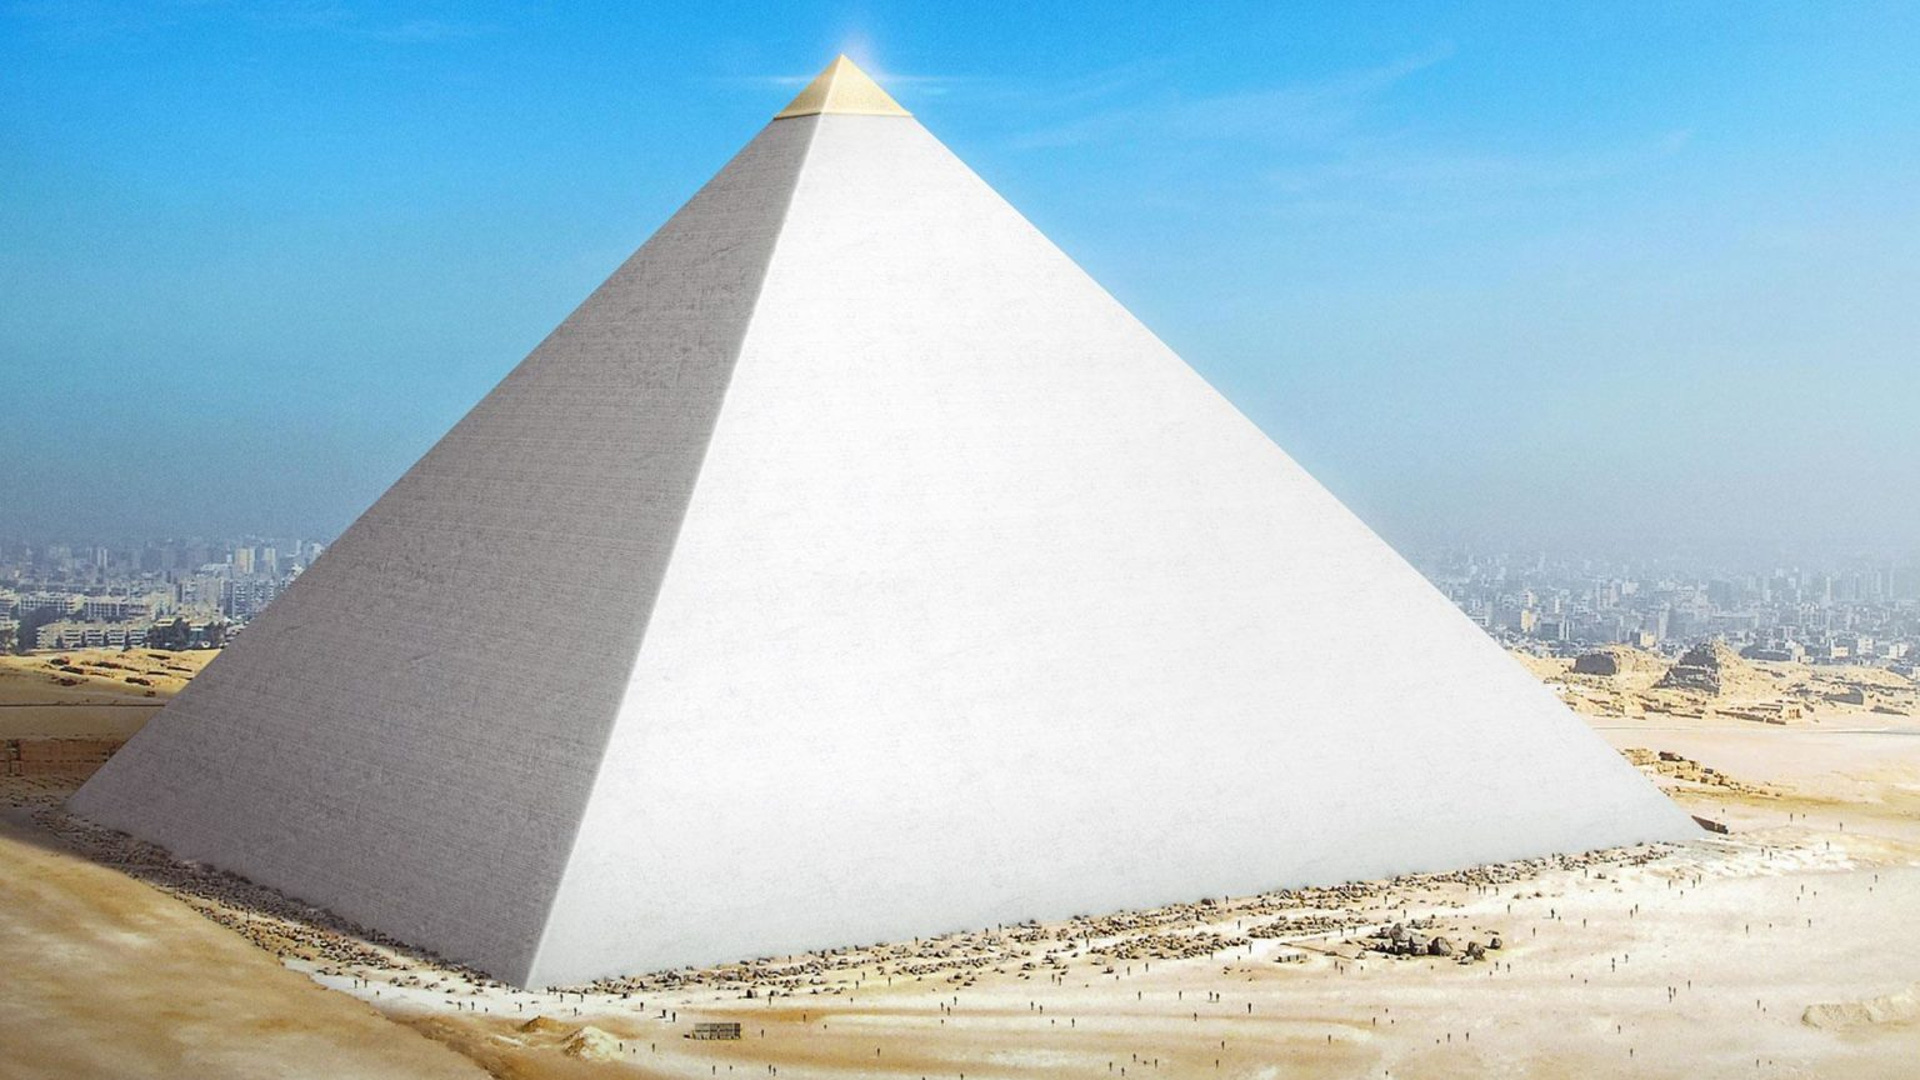 пирамида чудо света